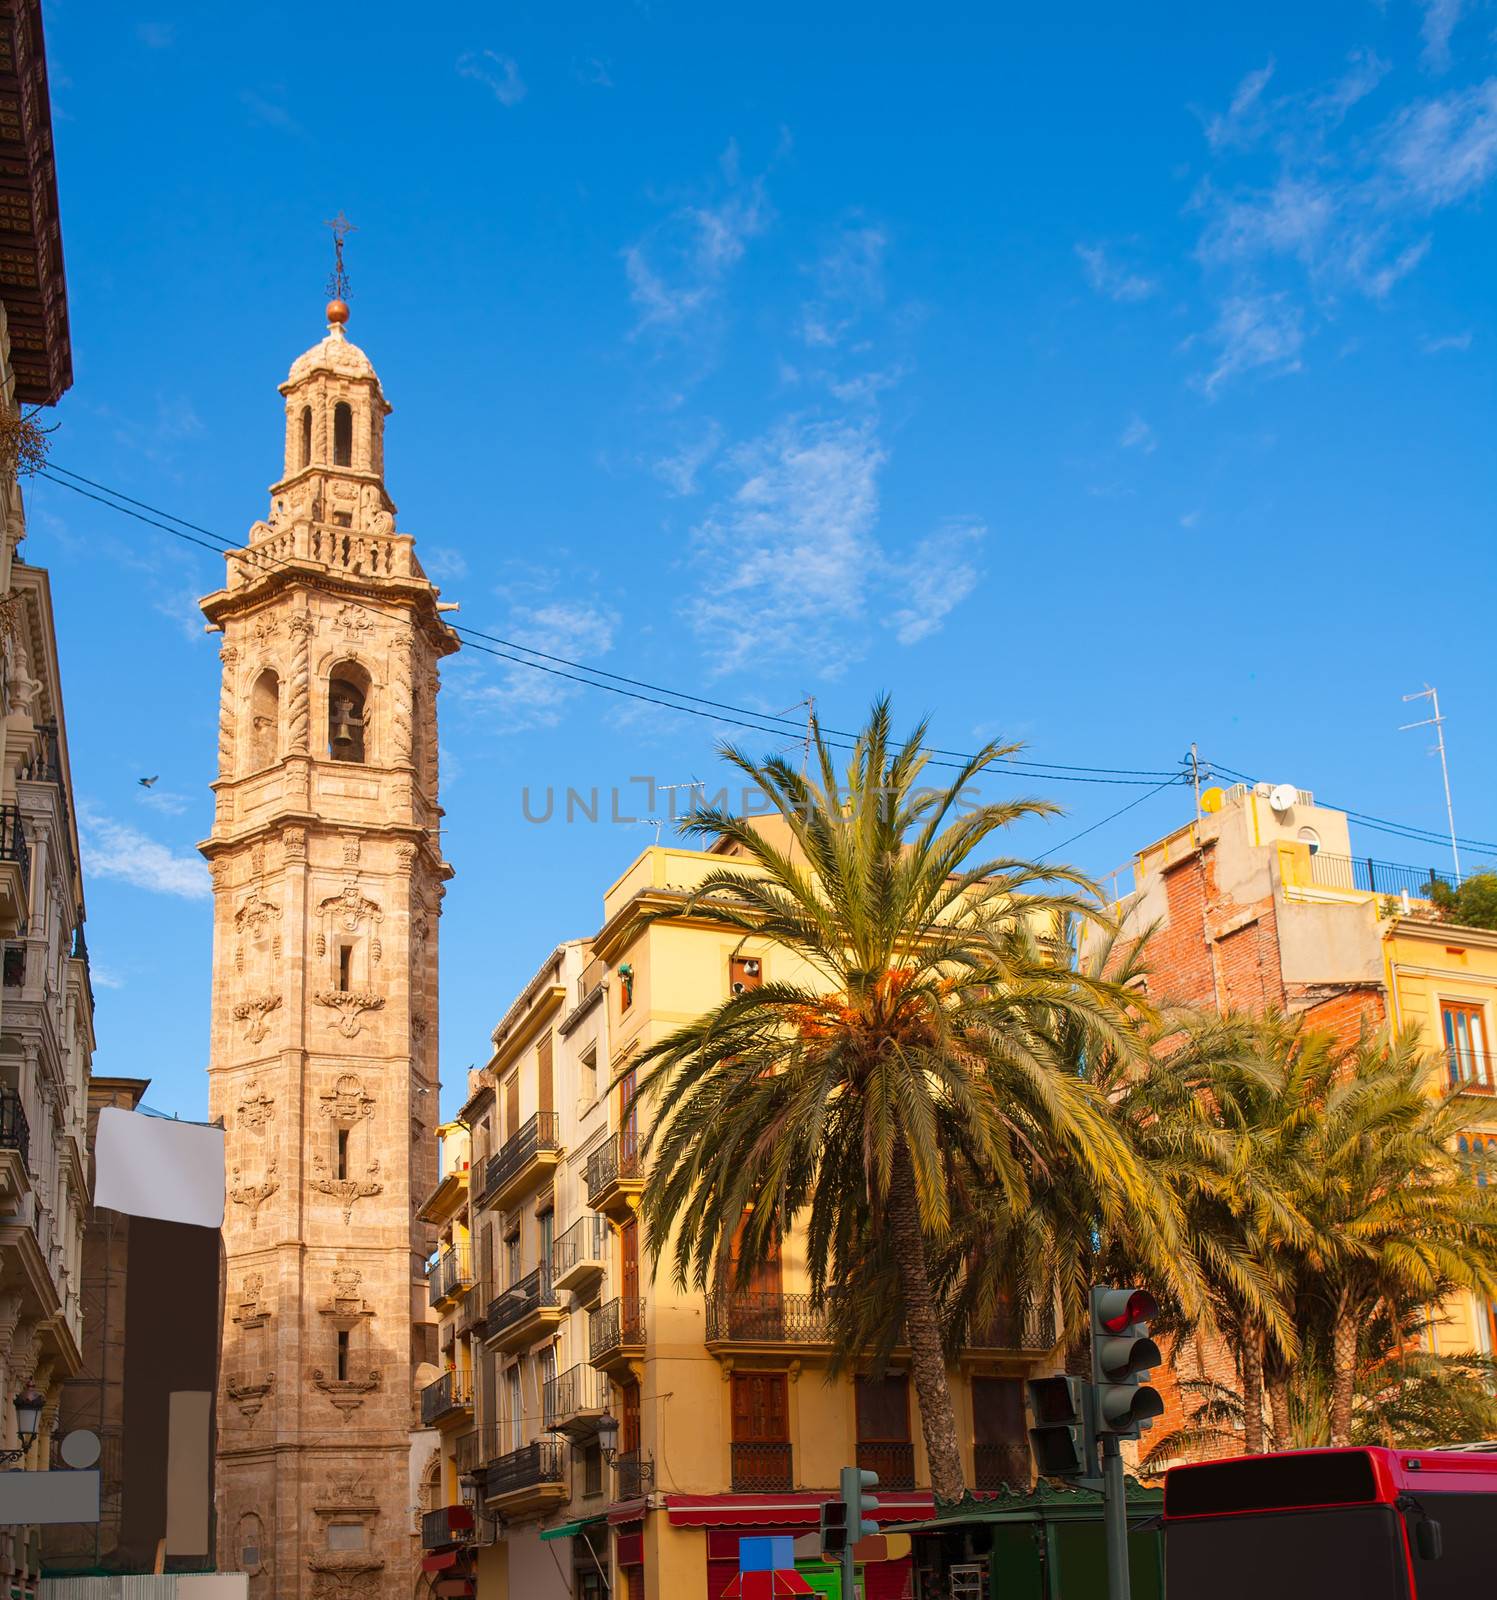 Valencia Plaza de la Reina with Santa Catalina church tower at Spain